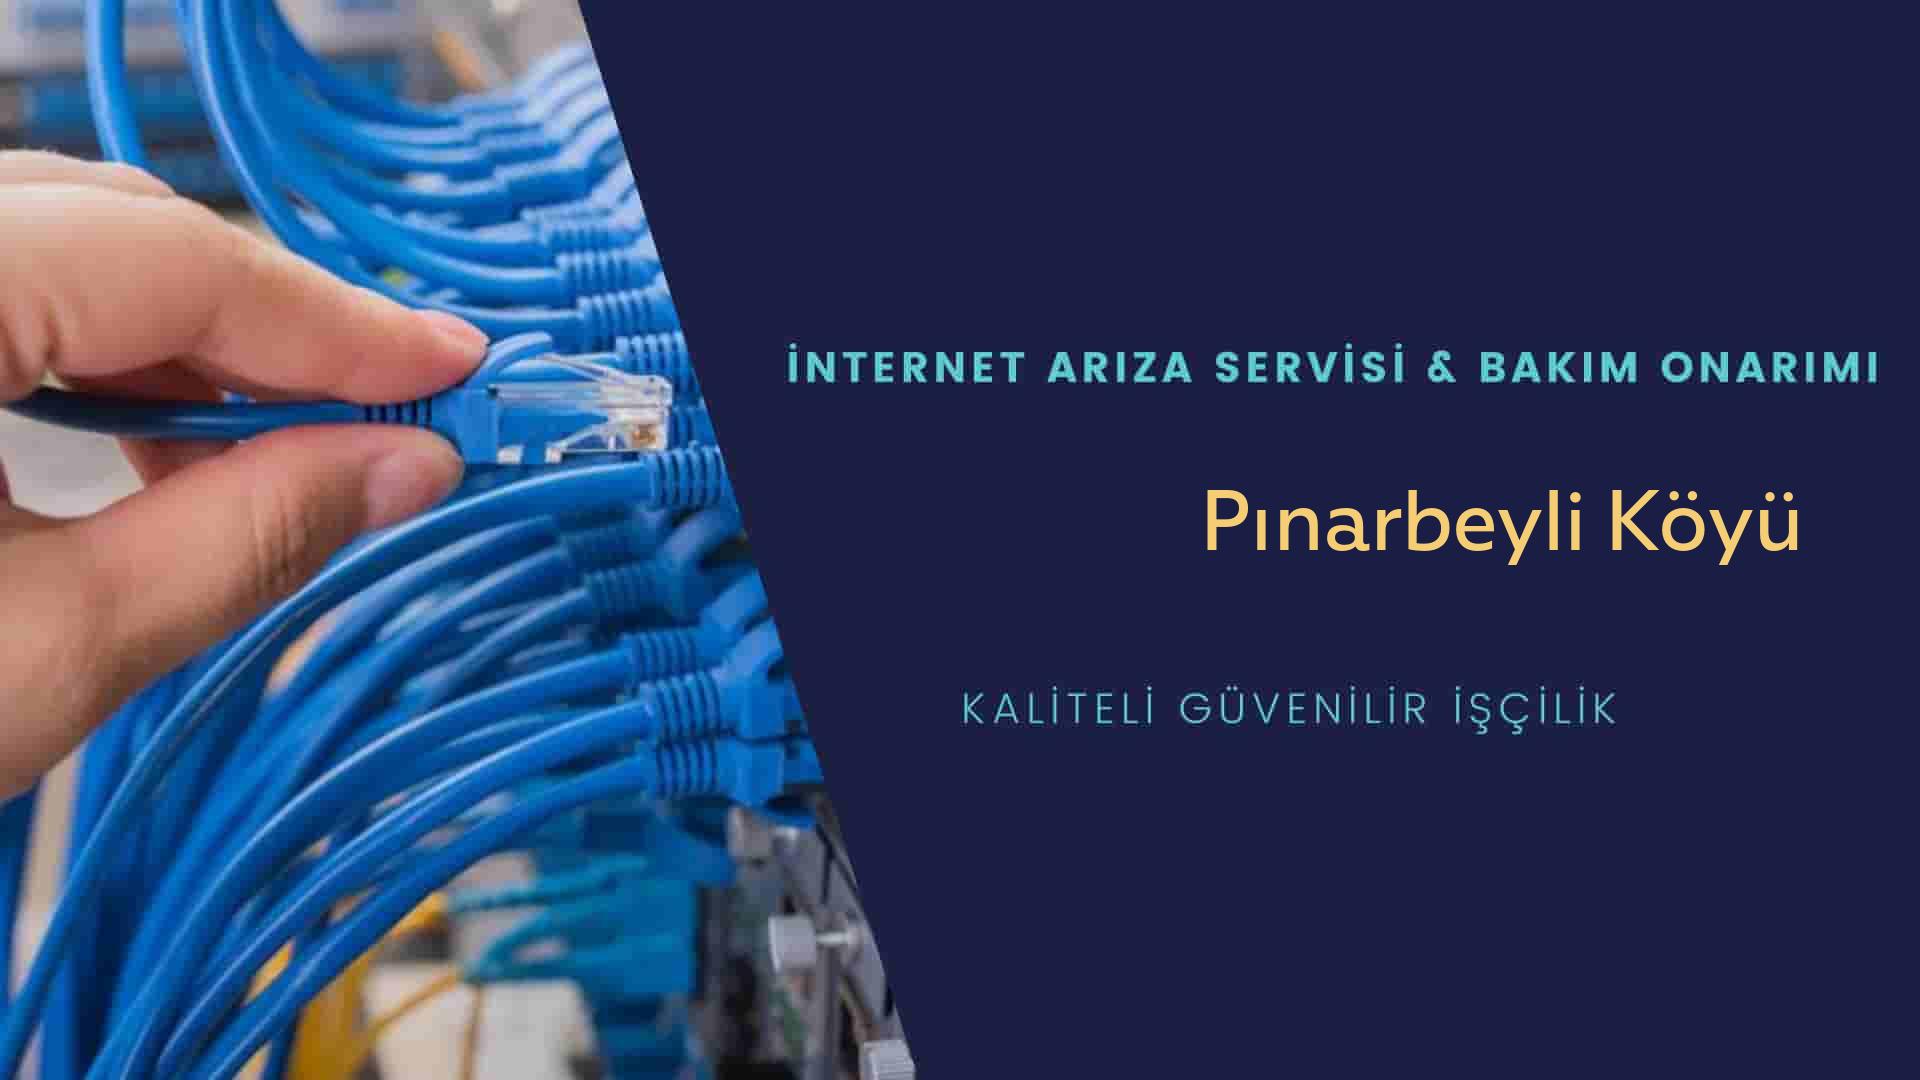 Pınarbeyli Köyü internet kablosu çekimi yapan yerler veya elektrikçiler mi? arıyorsunuz doğru yerdesiniz o zaman sizlere 7/24 yardımcı olacak profesyonel ustalarımız bir telefon kadar yakındır size.